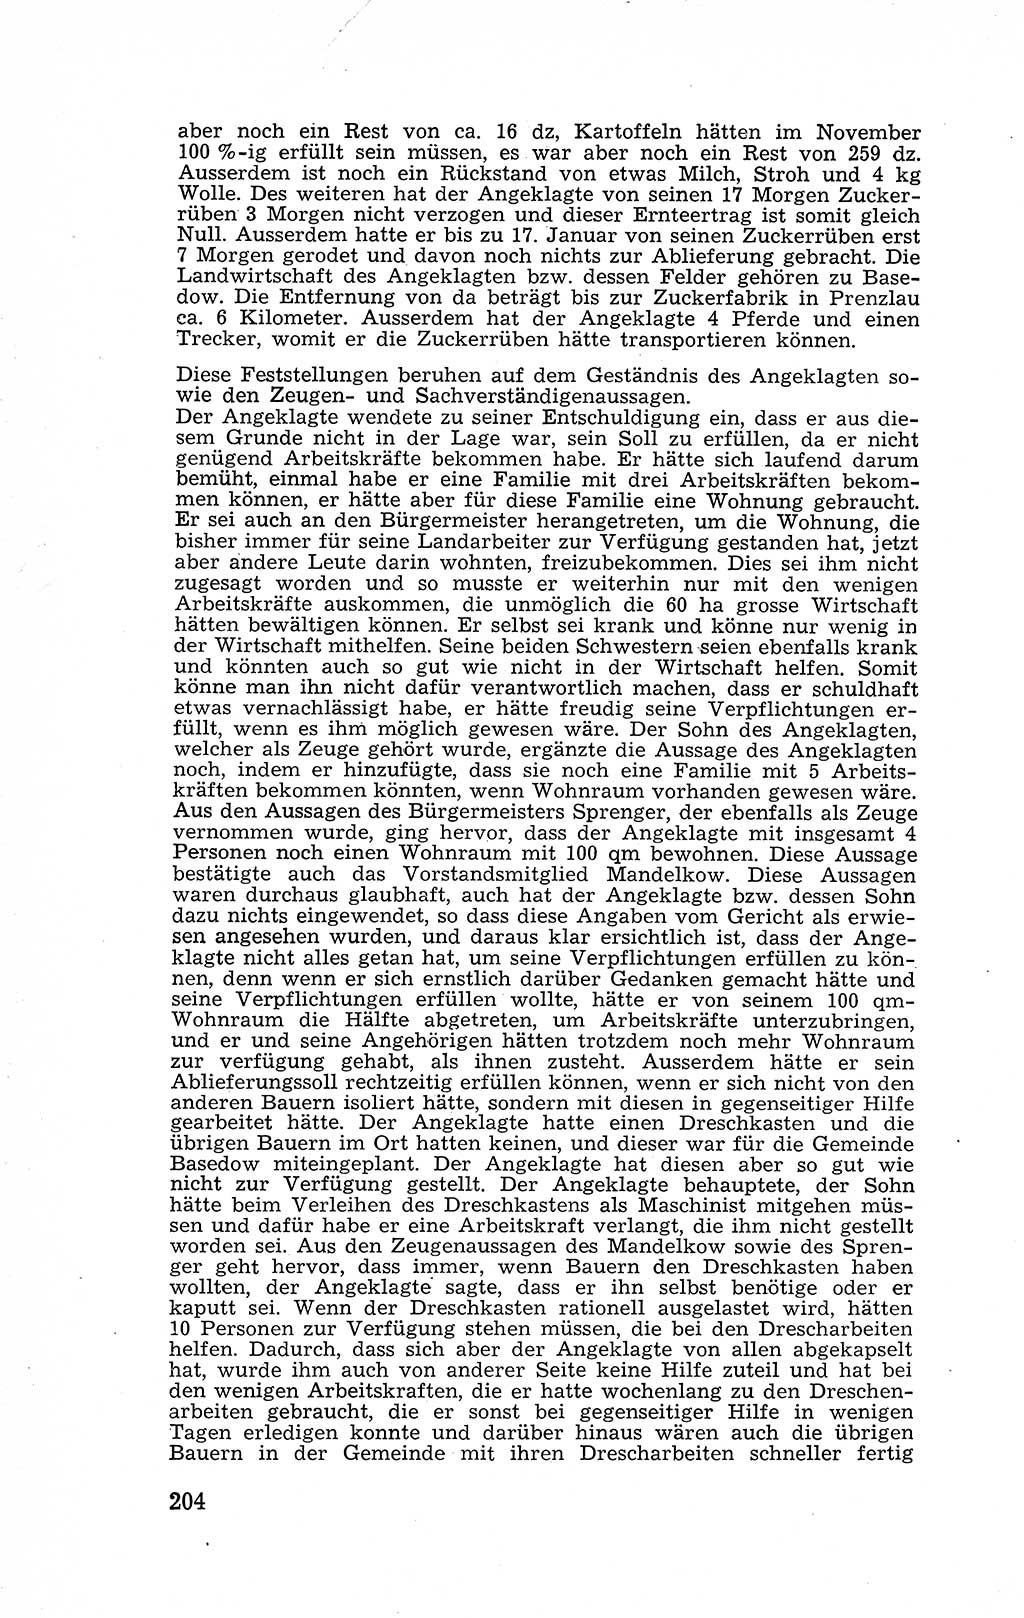 Recht in Fesseln, Dokumente, Internationale Juristen-Kommission [Bundesrepublik Deutschland (BRD)] 1955, Seite 204 (R. Dok. IJK BRD 1955, S. 204)